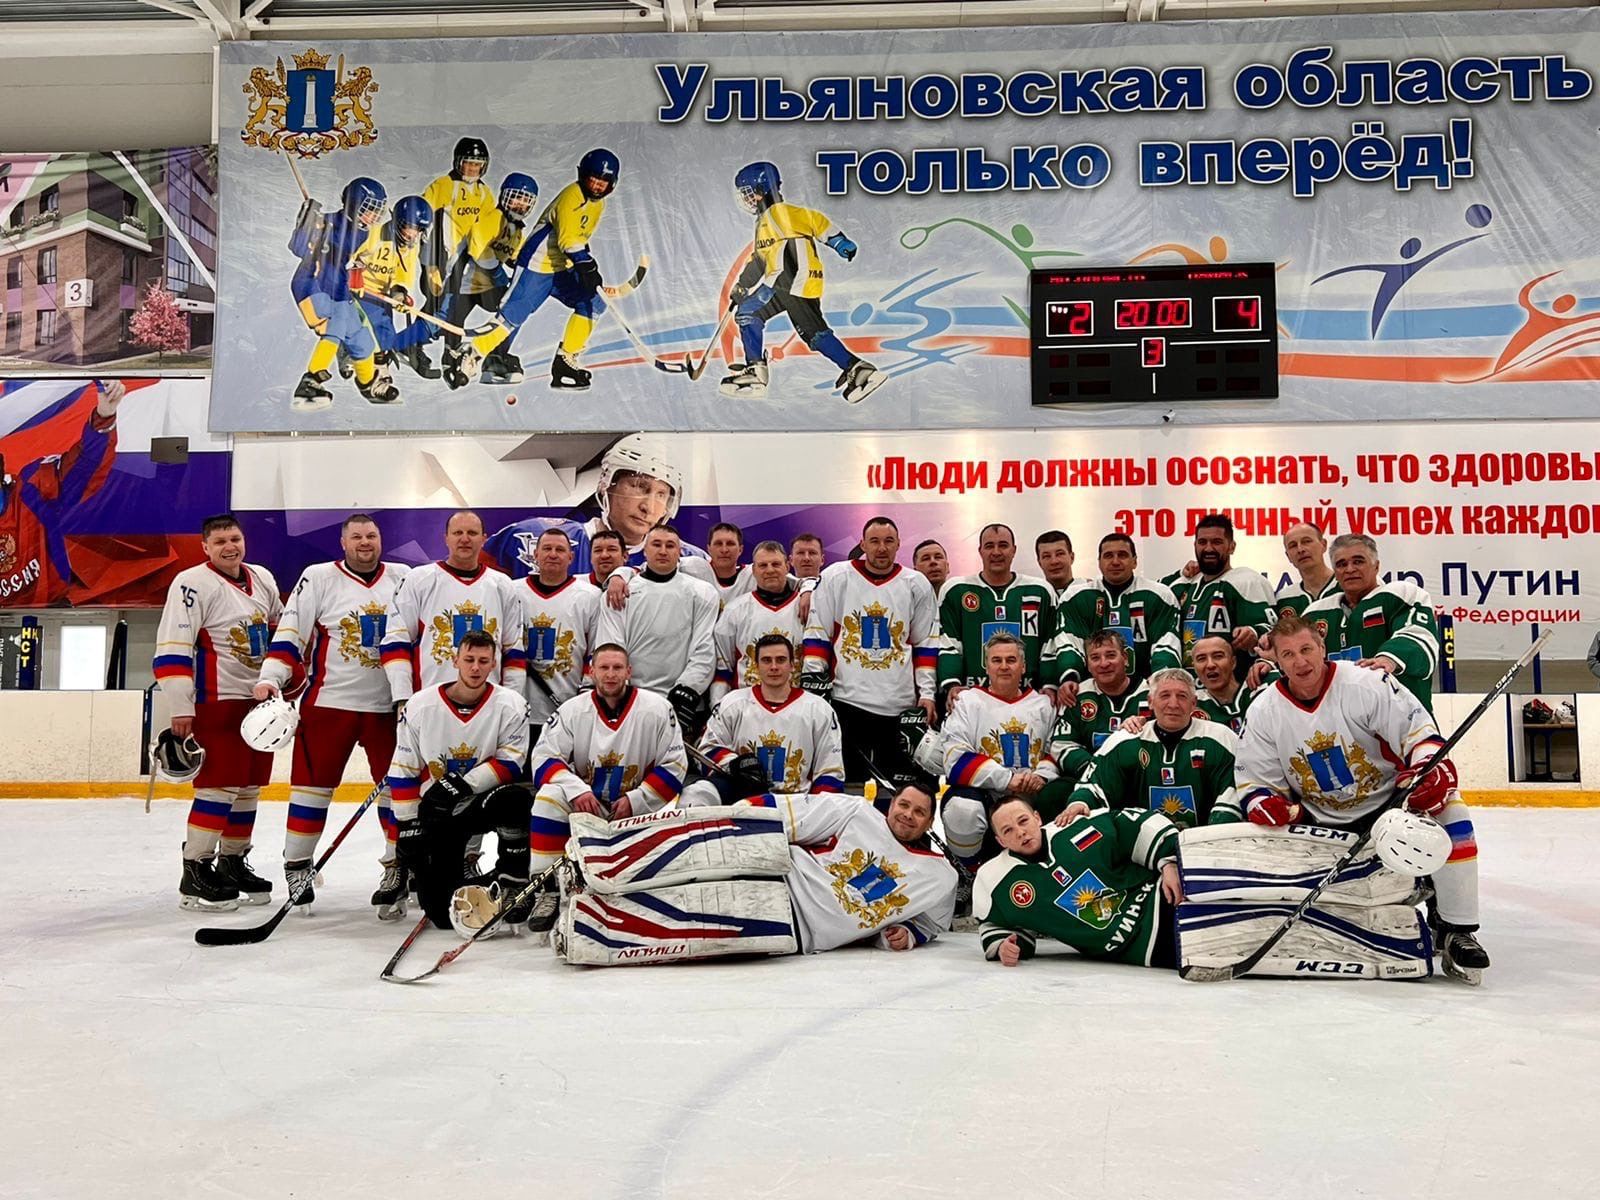 Сегодня в Буинске состоялась товарищеская игра по хоккею между командами Буинск-Ульяновск